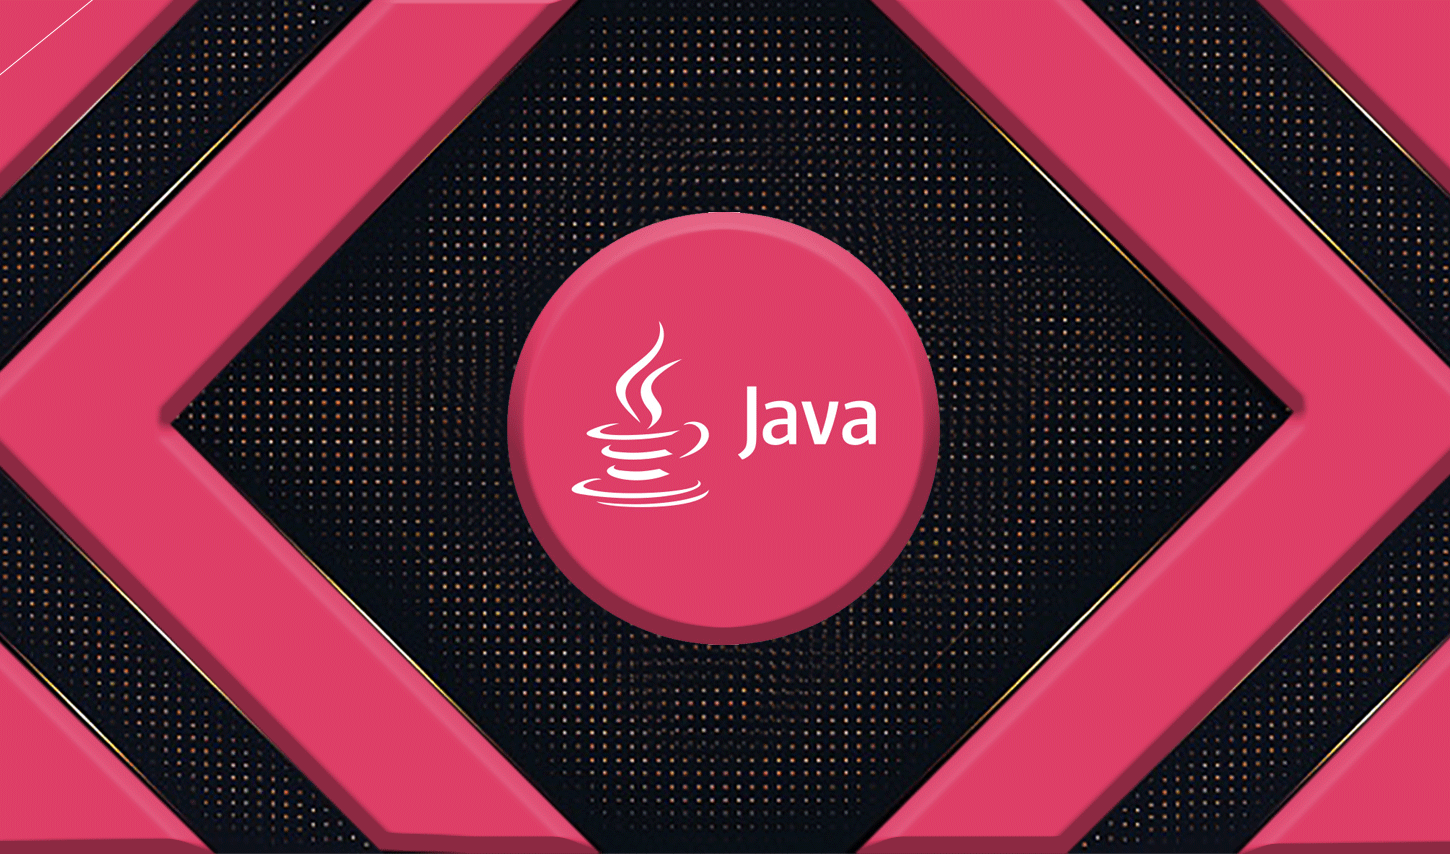 دوره آموزش جاوا j2se، در این دوره از آموزش Java دانشجویان با زبان قدرتمند java آشنا شده و می توانند برنامه های کاربردی را به انجام برسانند.